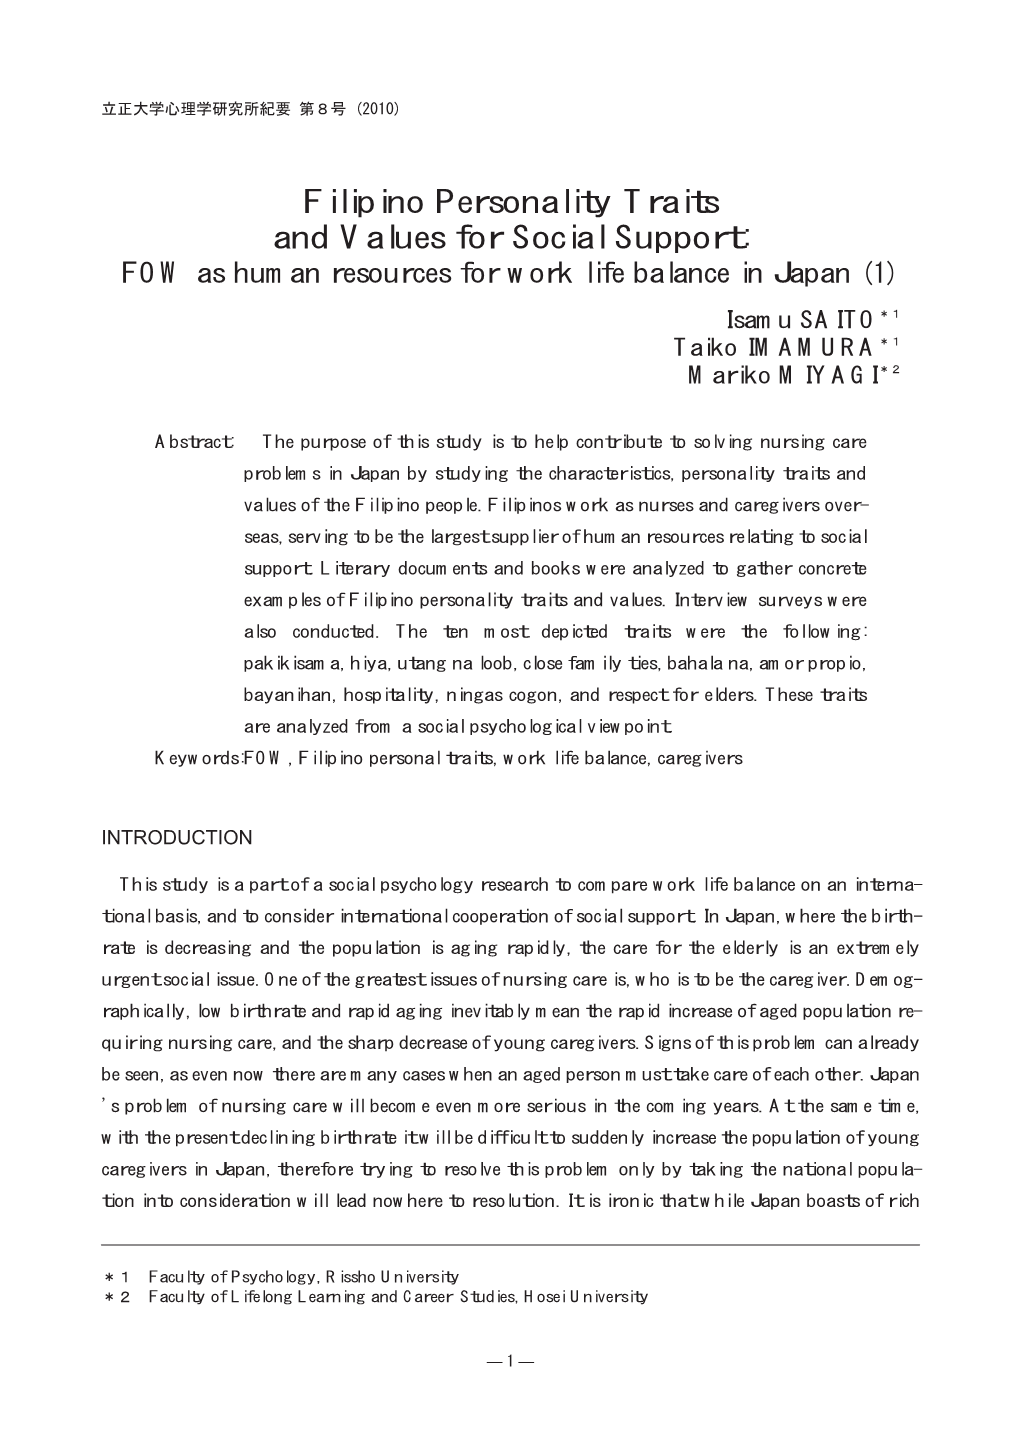 Filipino Personality Traits and Values for Social Support: FOW As Human Resources for Work Life Balance in Japan (1) Isamu SAITO＊１ Taiko IMAMURA＊１ Mariko MIYAGI＊２